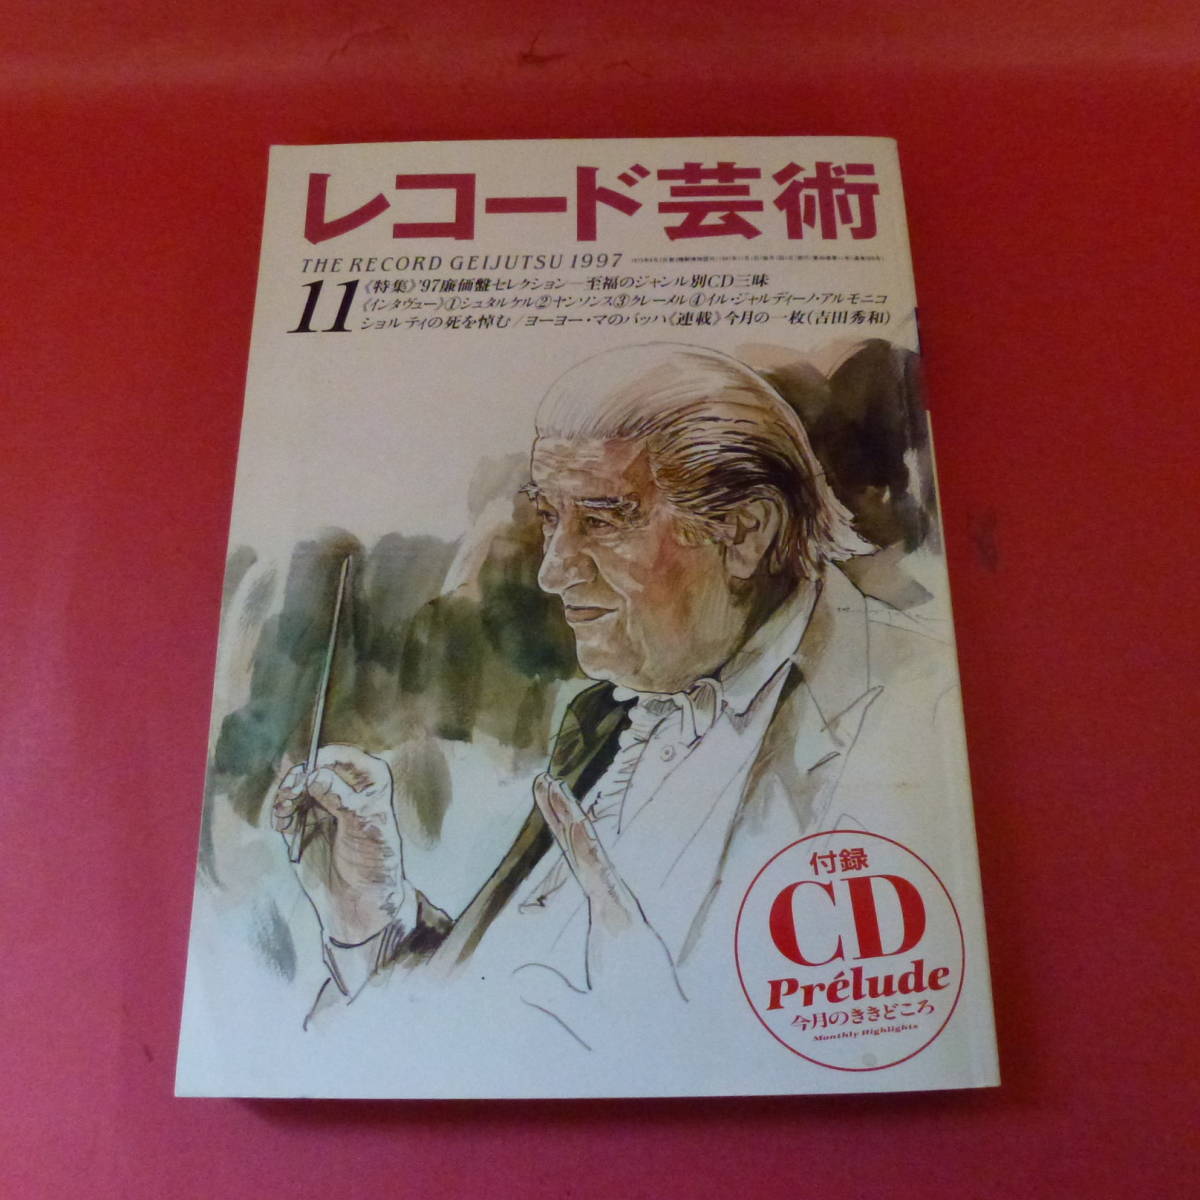 g1-230117* запись искусство эпоха Heisei 9 1997 год 11 месяц CD есть недорогой запись специальный выпуск shutarukeruyansons Ogawa ..